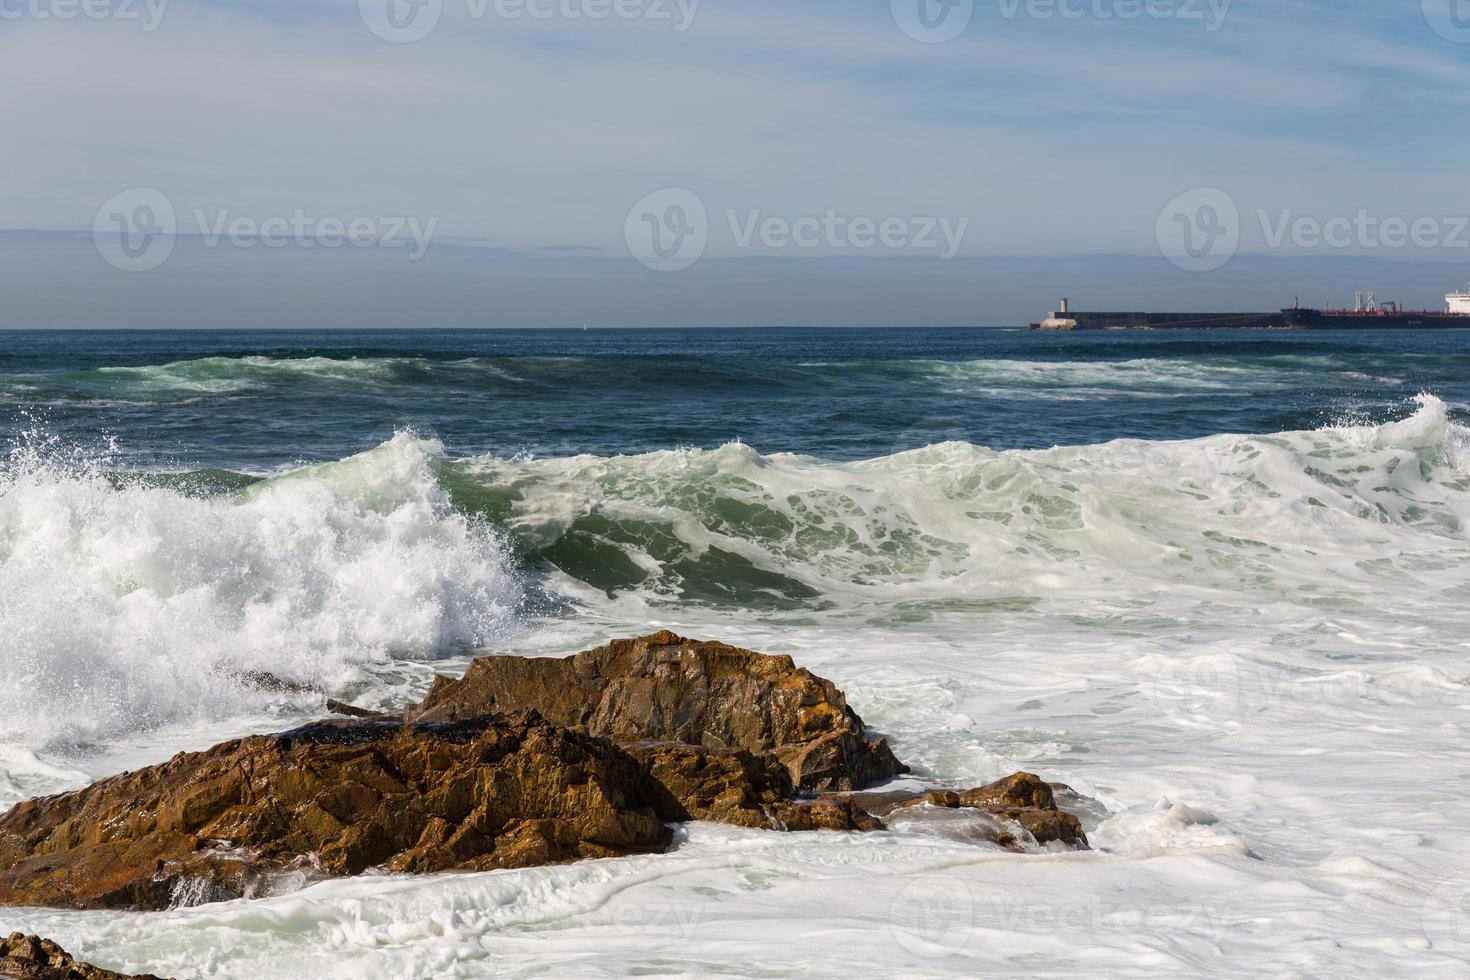 Wellen über der portugiesischen Küste foto